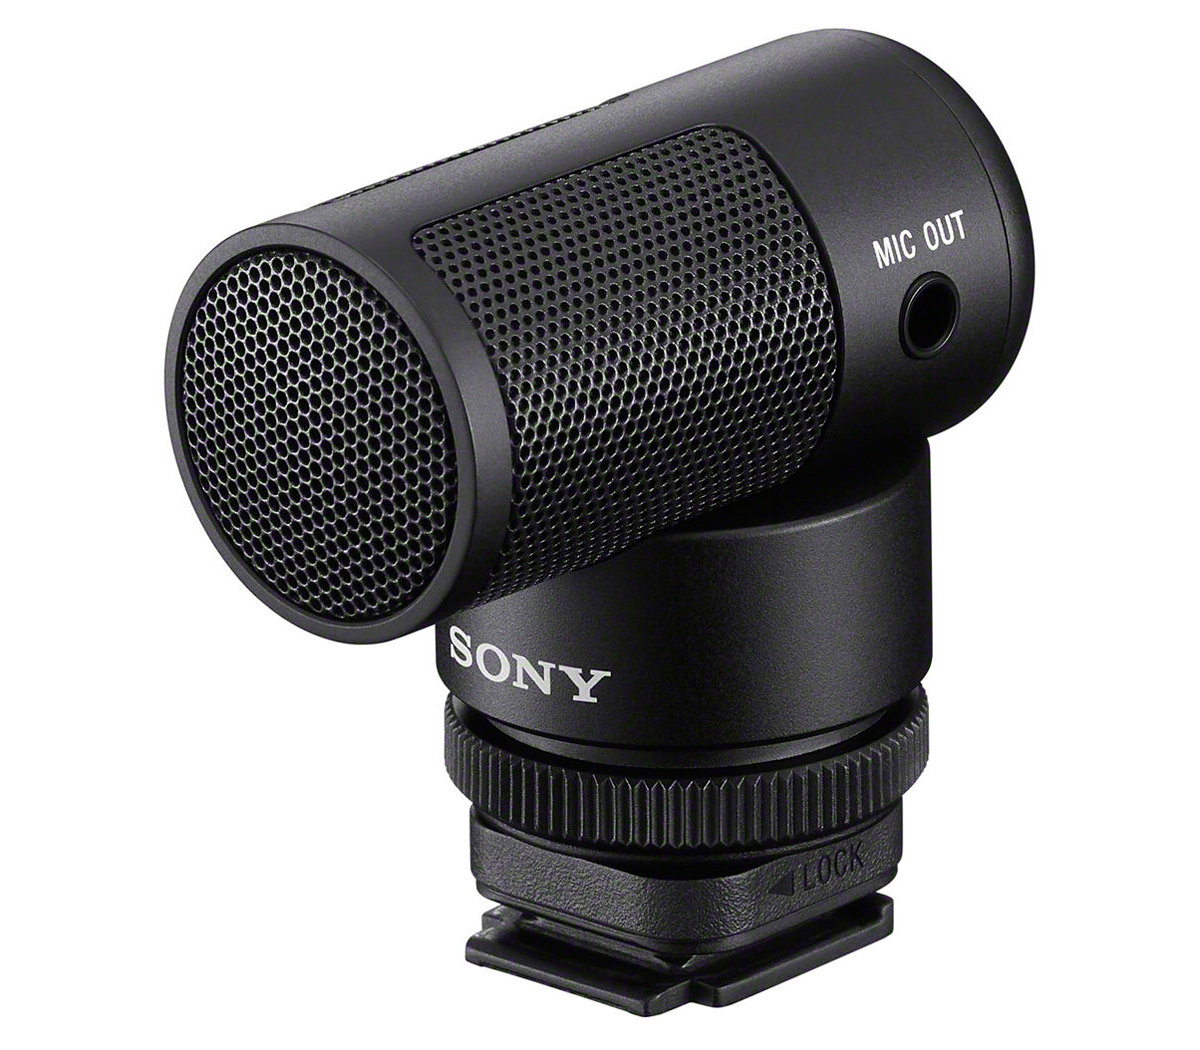 Микрофон Sony ECM-G1, направленный, моно, 3.5 мм / MI Shoe